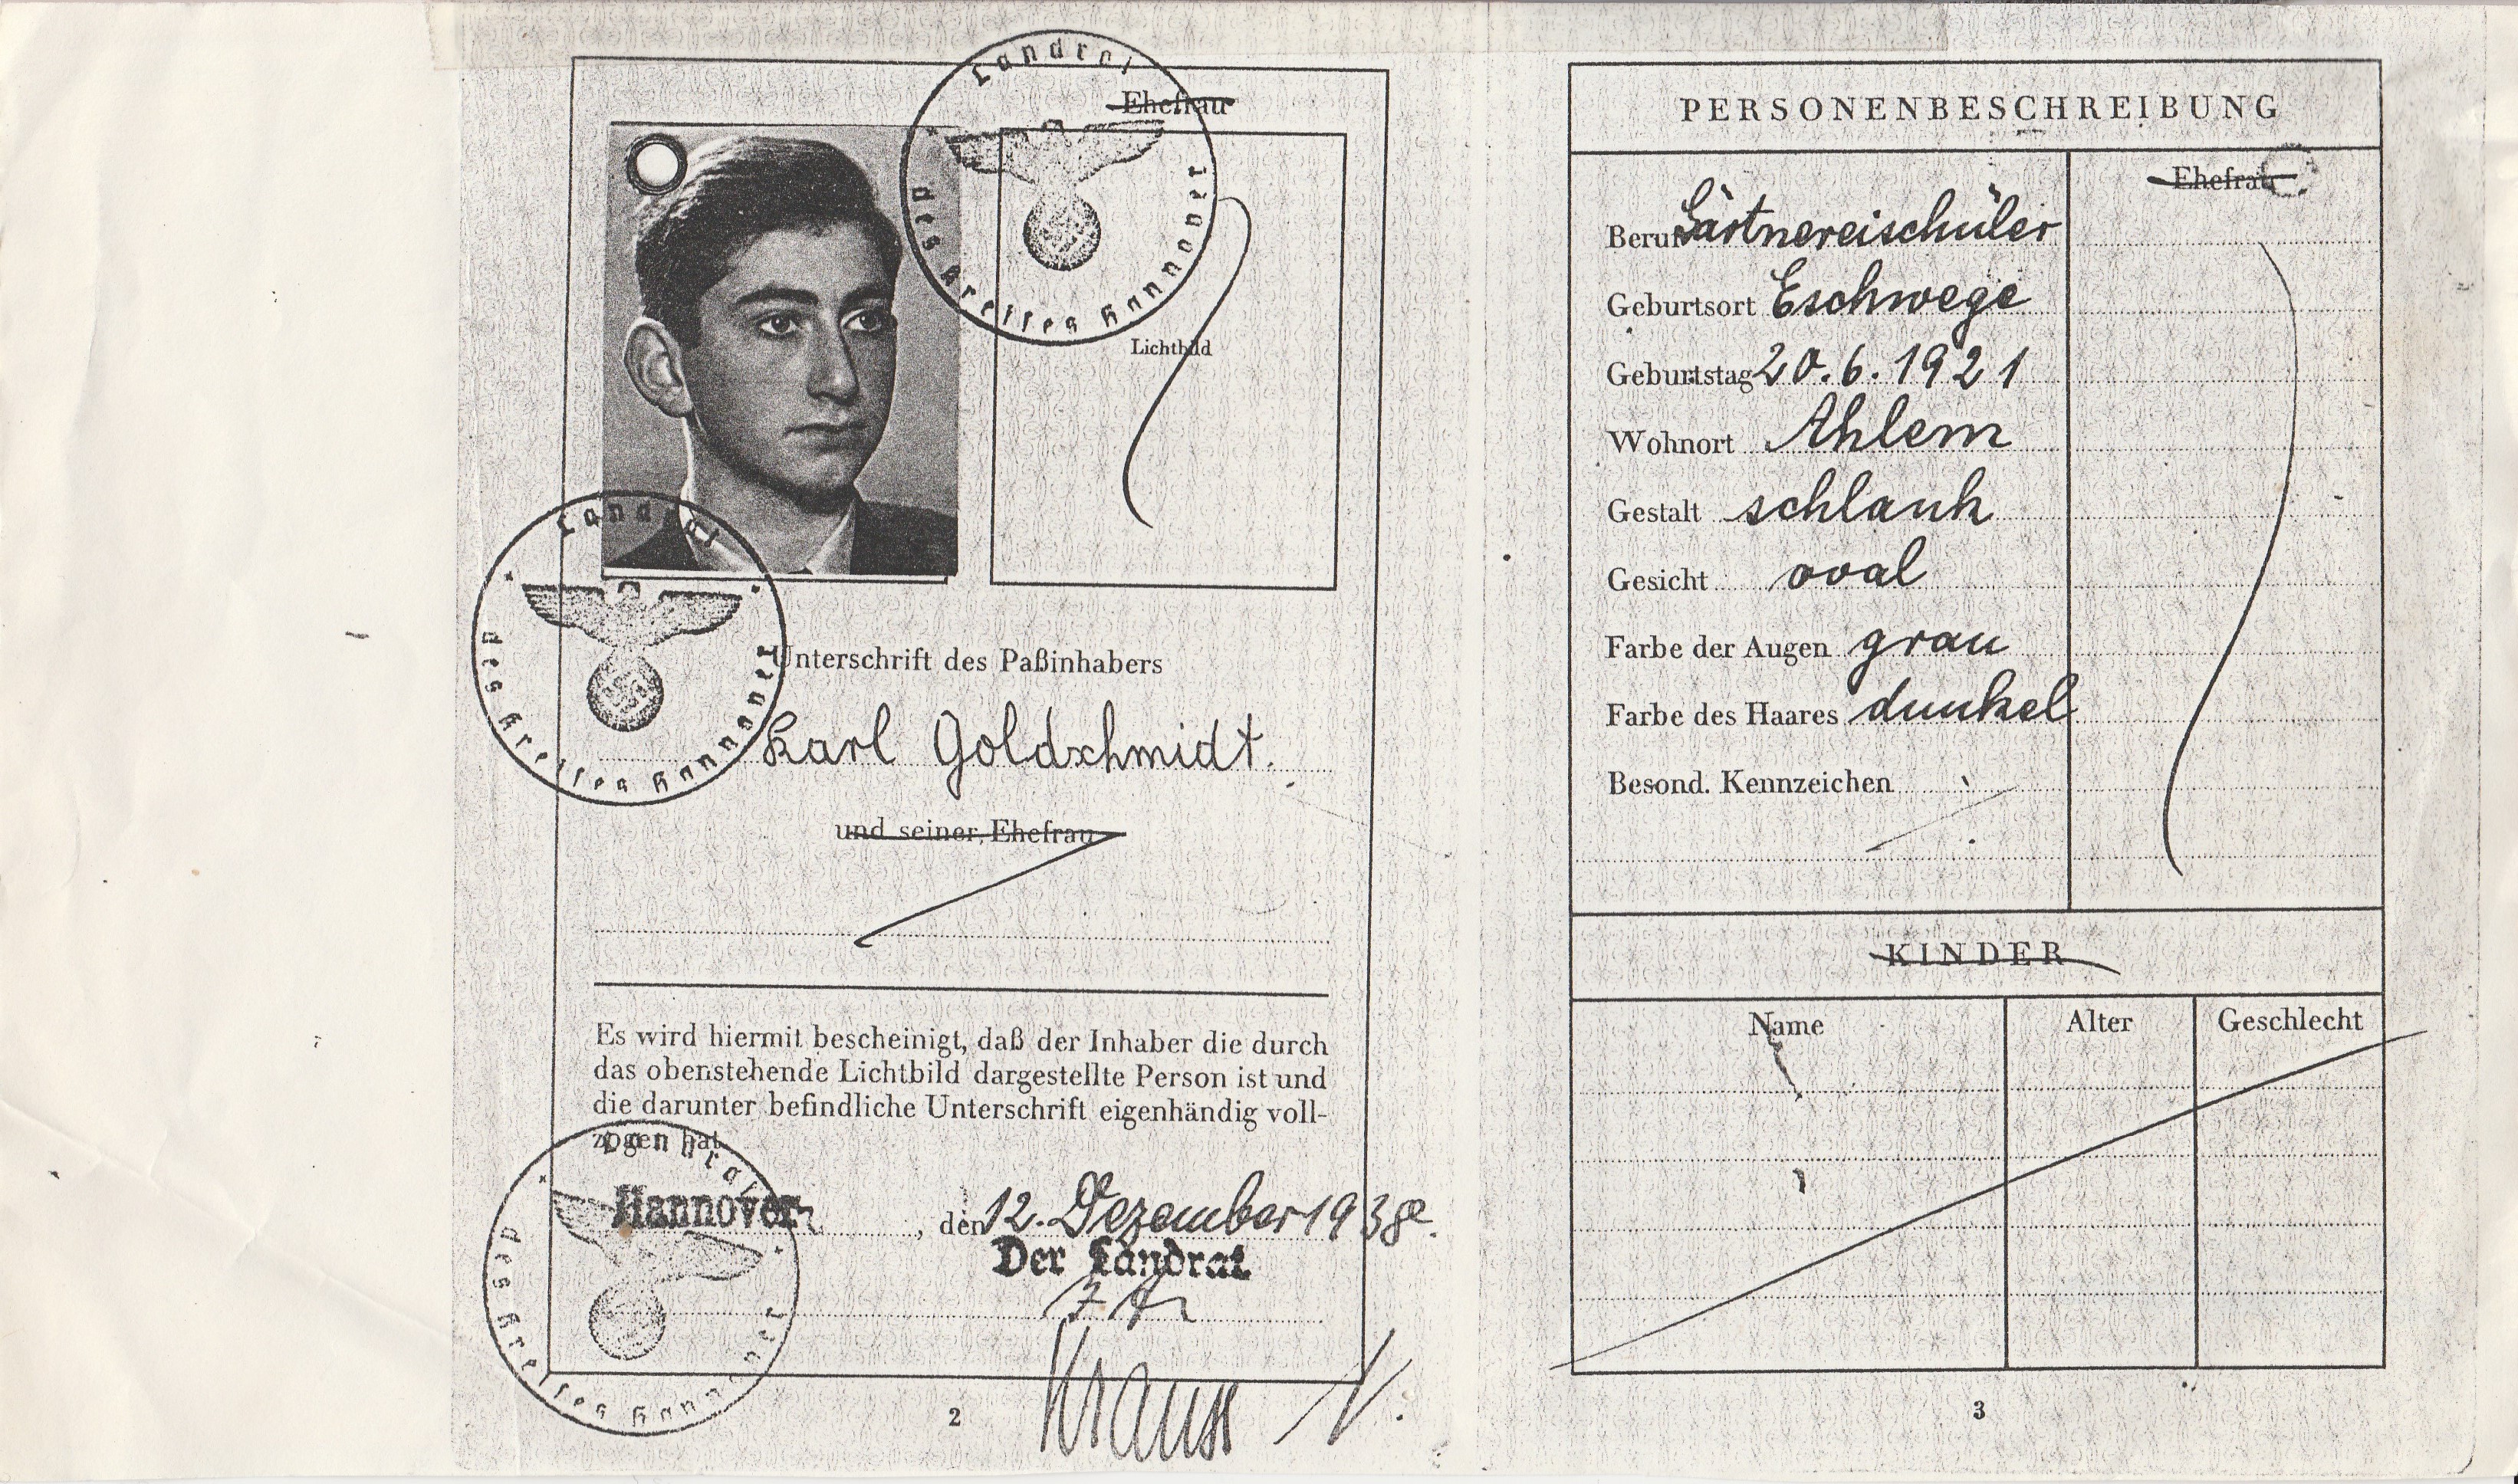 Karls Reisepass von 1938